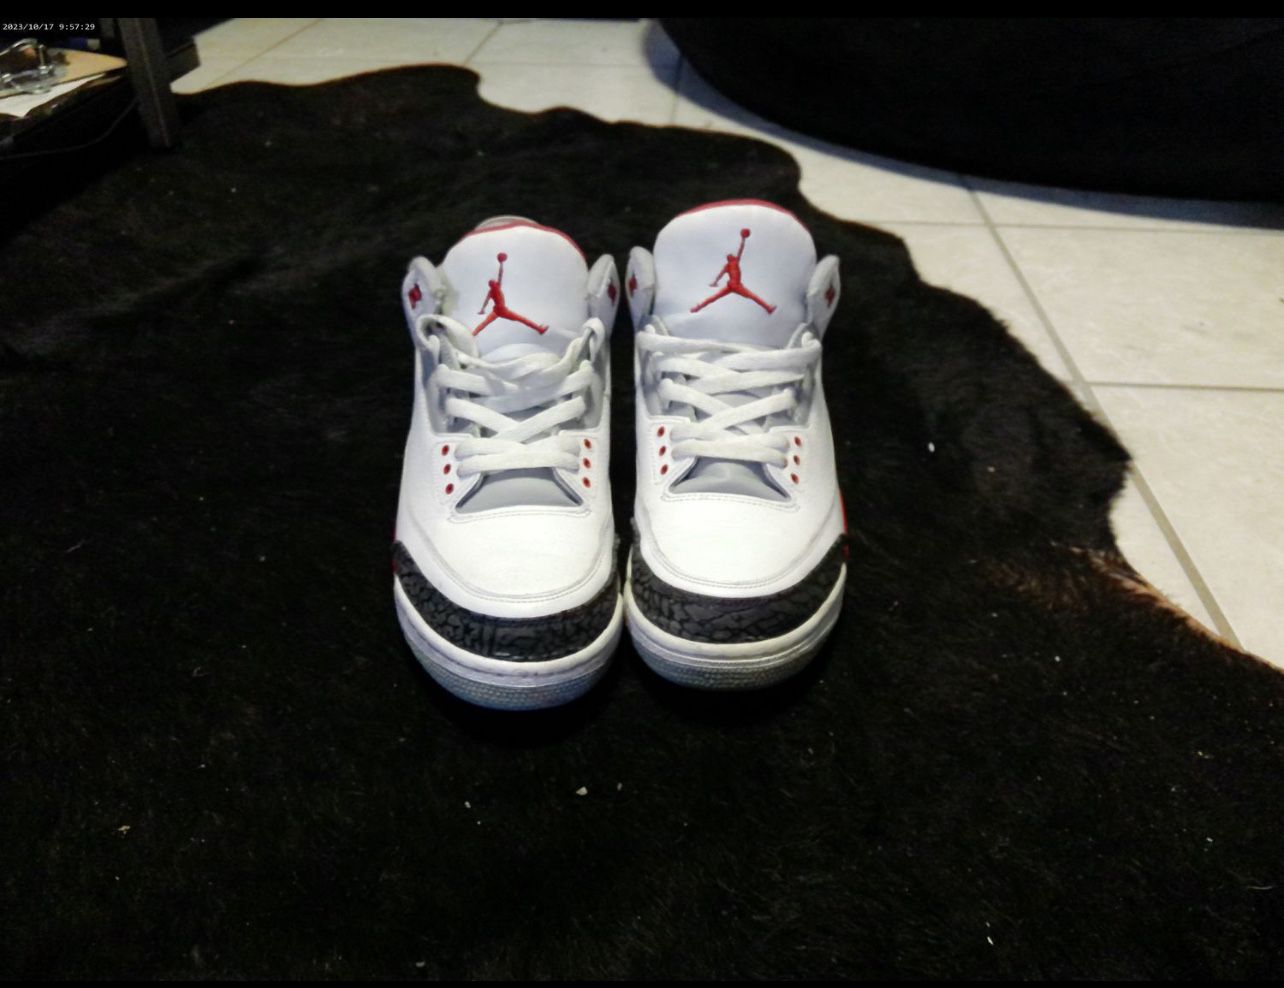 Air Jordan 3 Retro